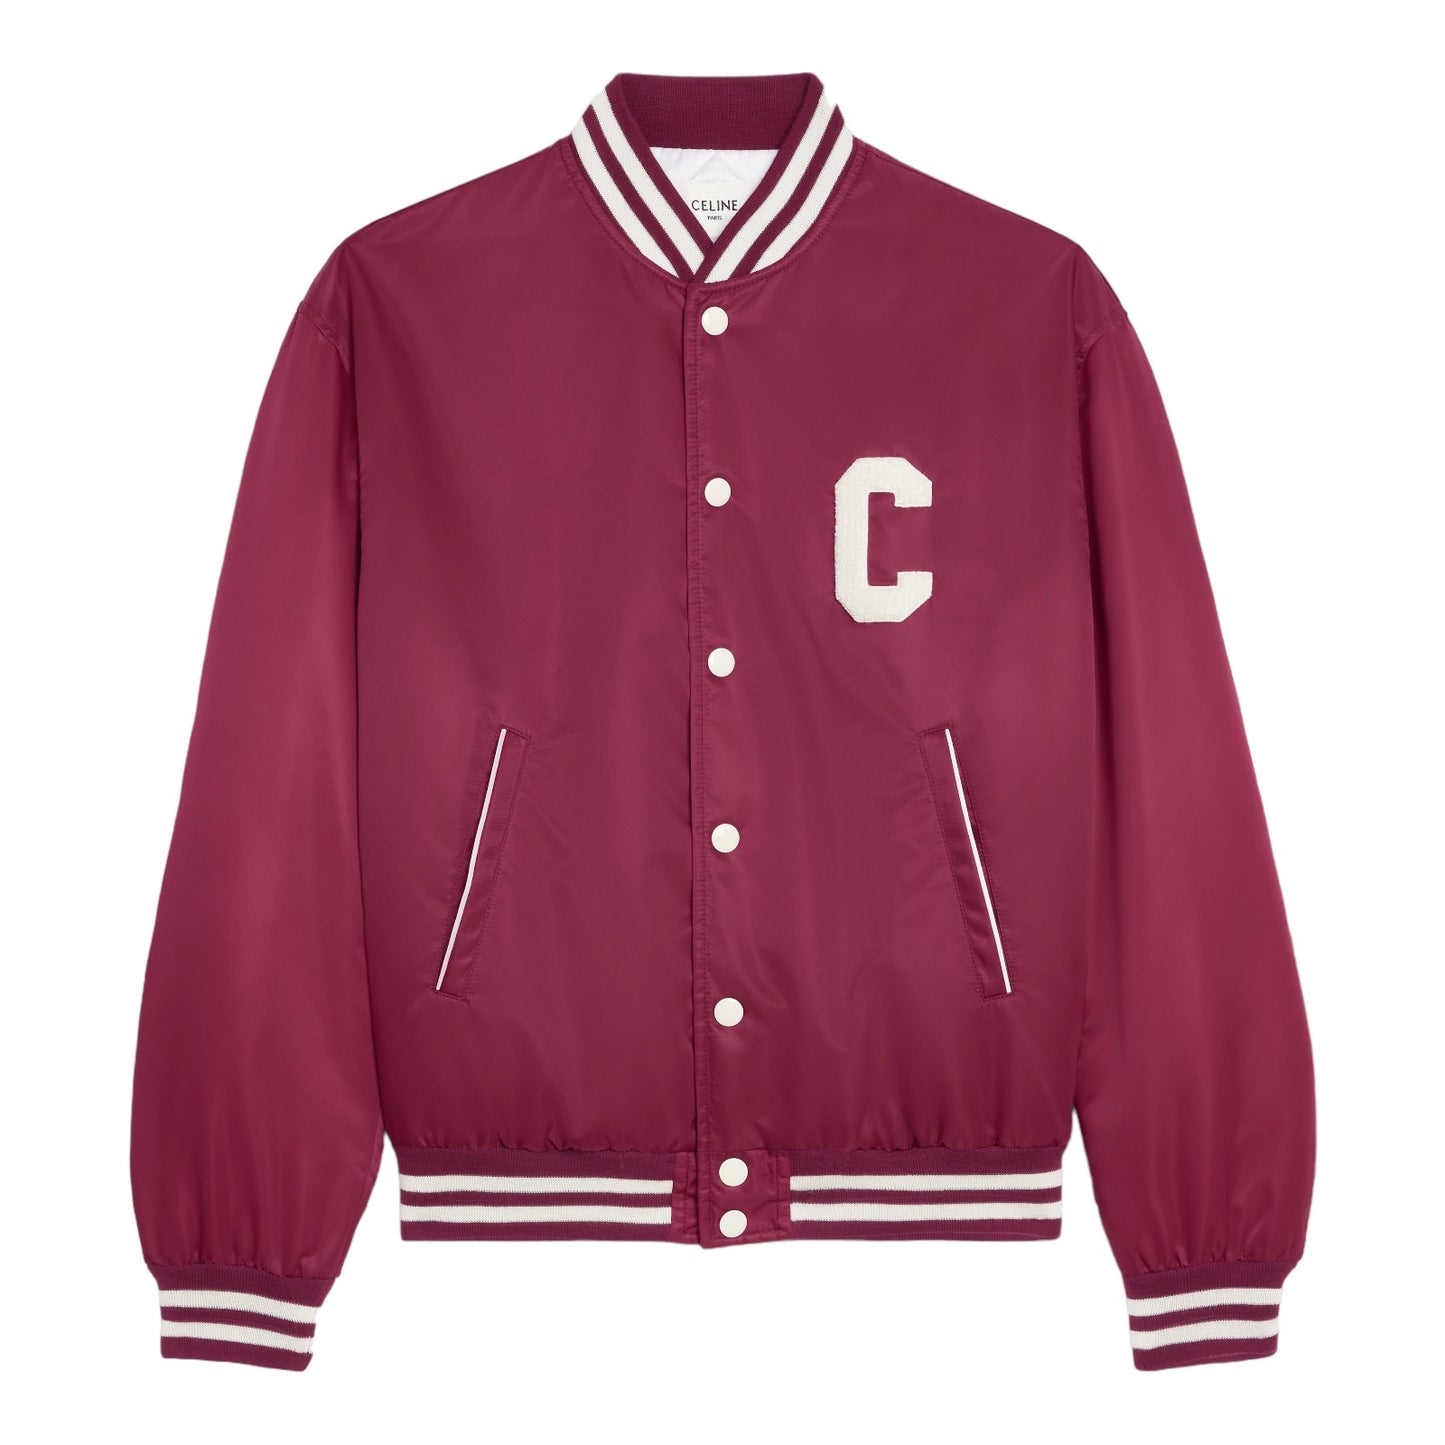 Celine Varsity Jacket in Nylon